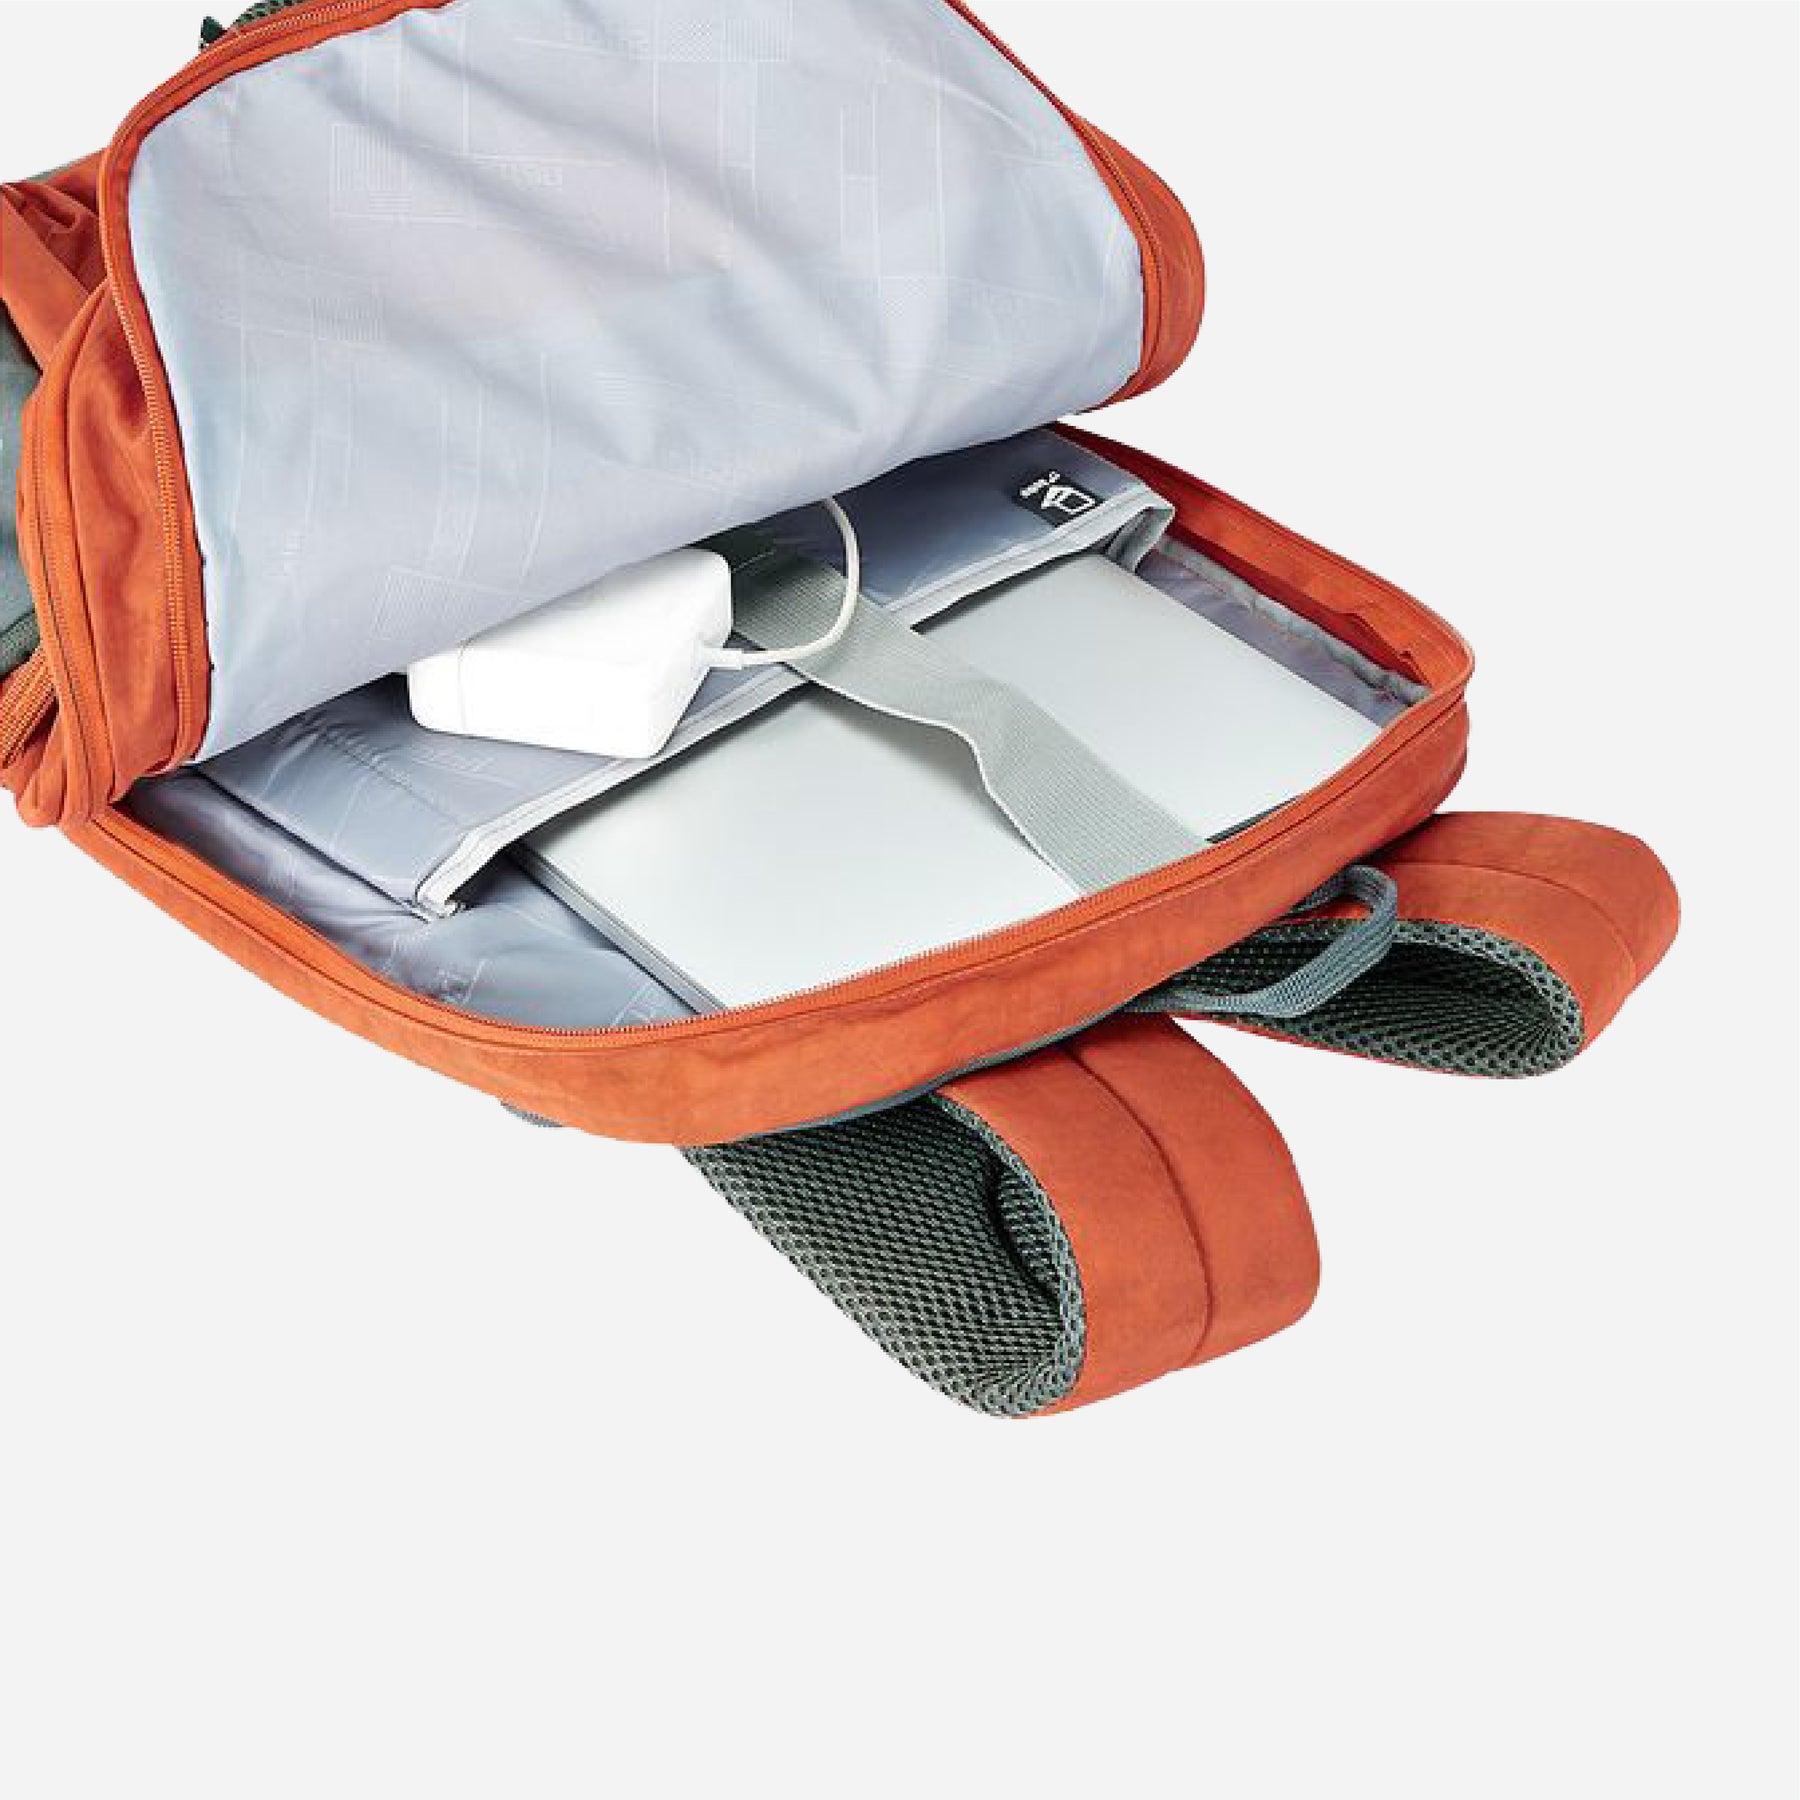 Safari Drawsting 44L Rust Orange Laptop Backpack with Raincover